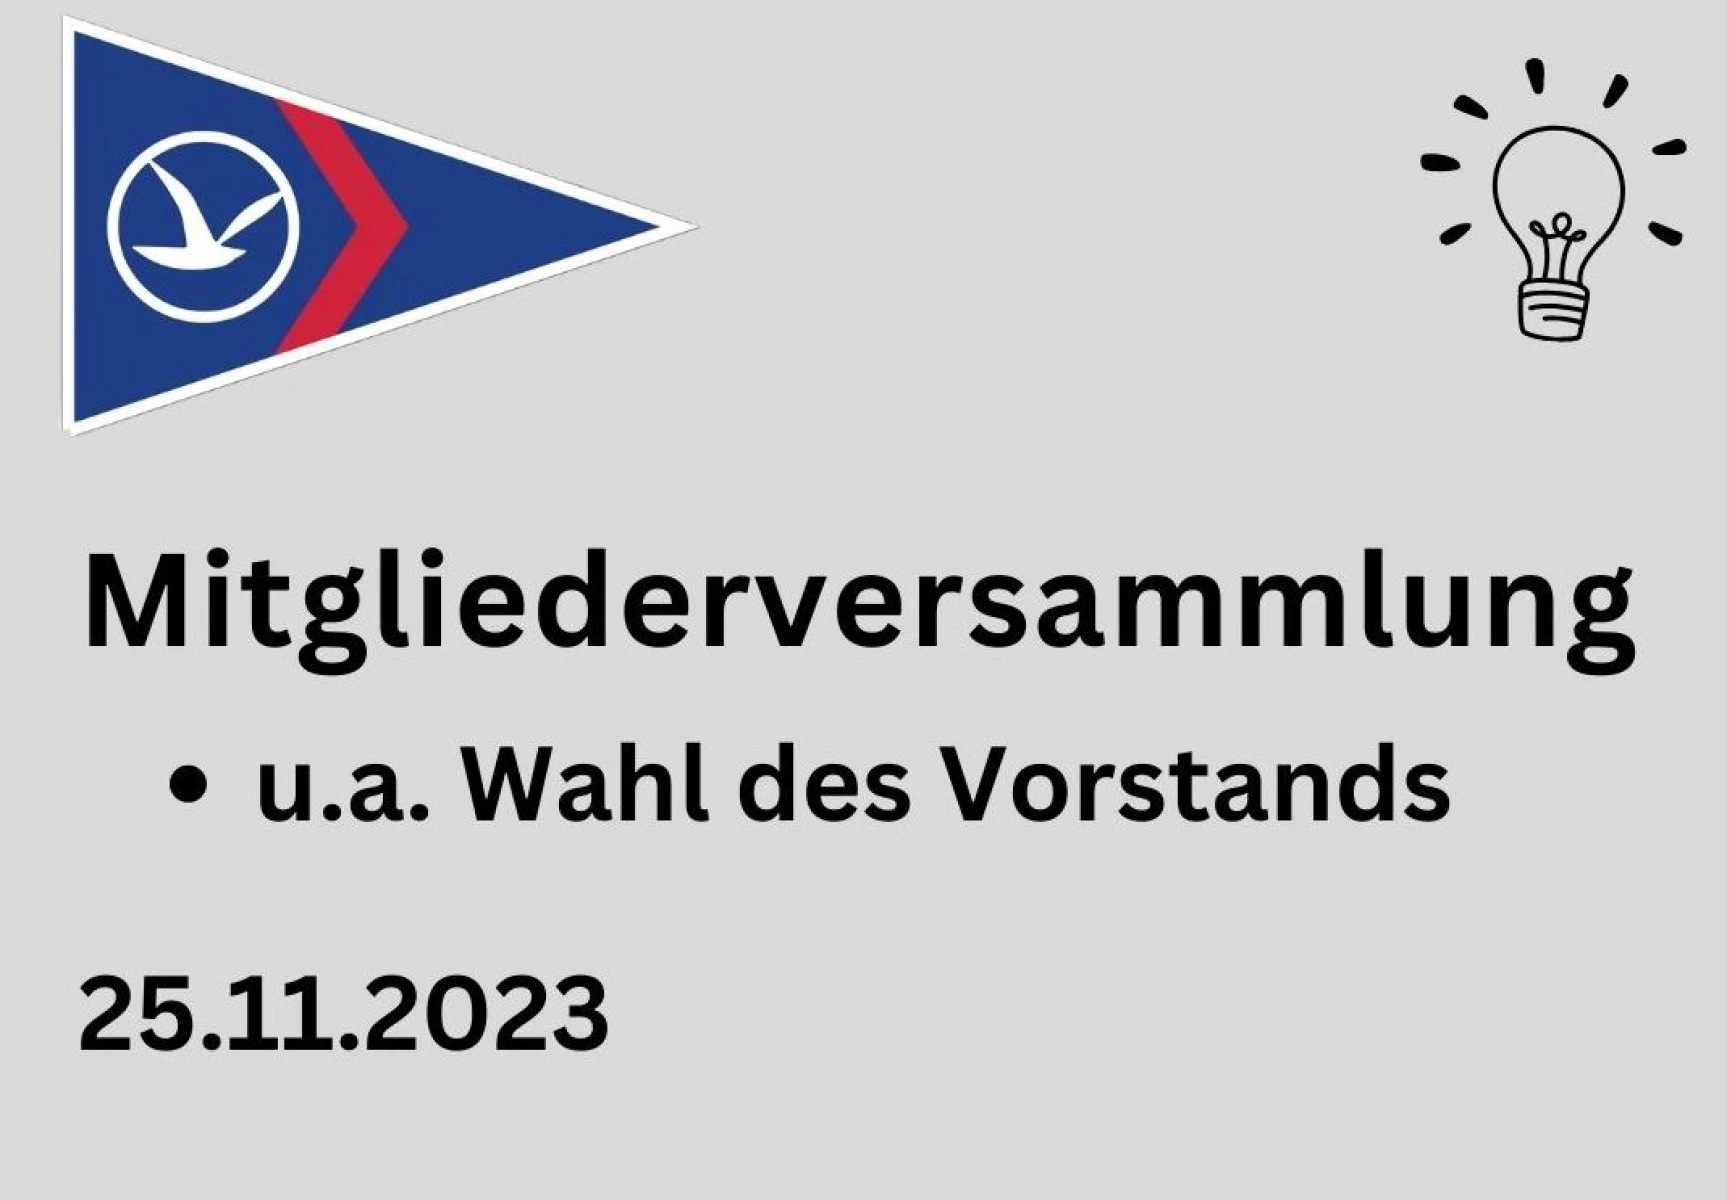 Mitgliederversammlung SSCR 2023